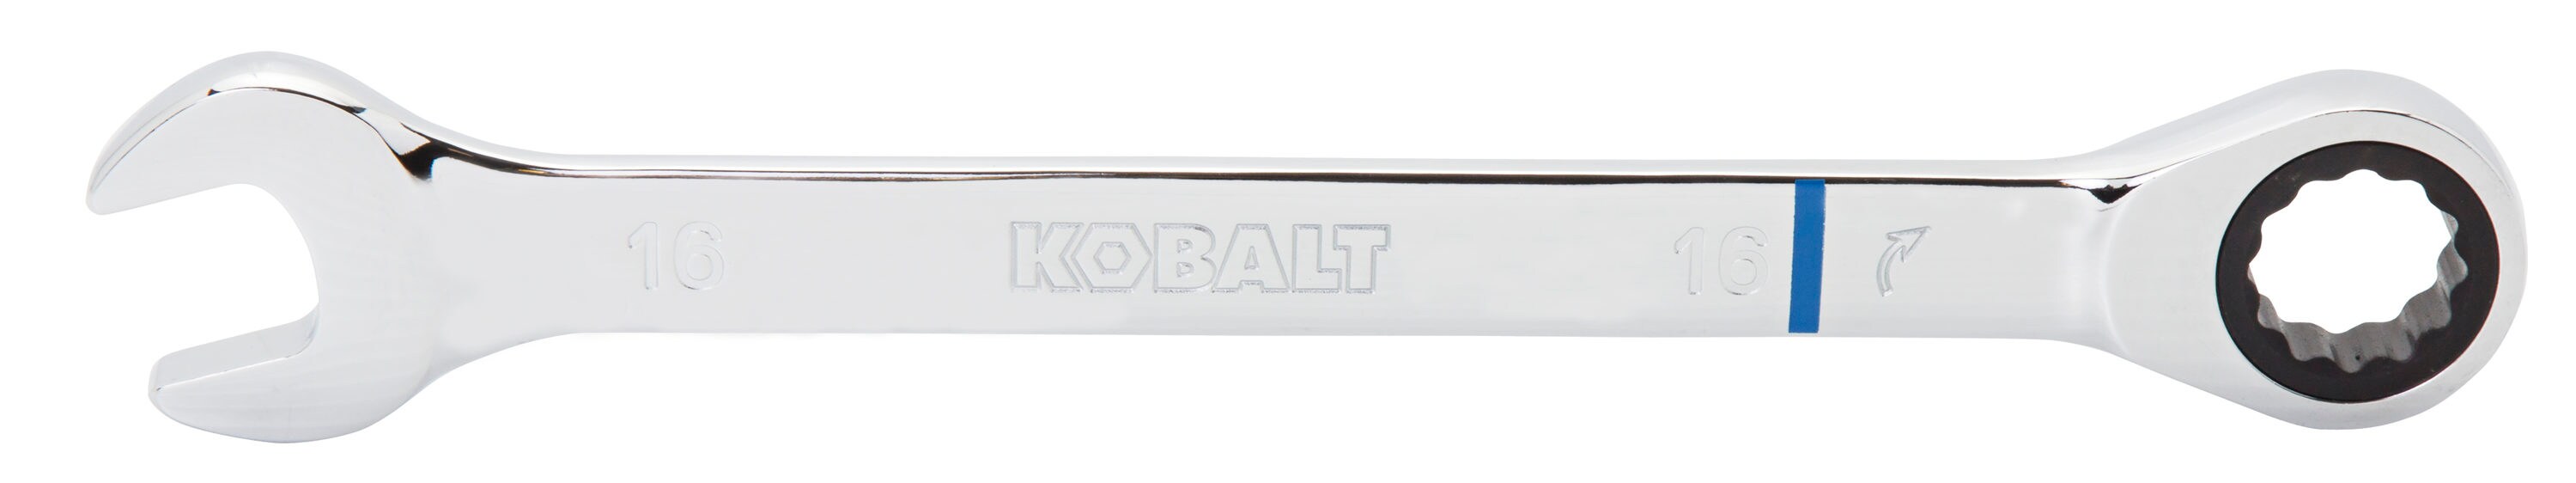 Kobalt 16mm 12-point Metric Ratchet Wrench 